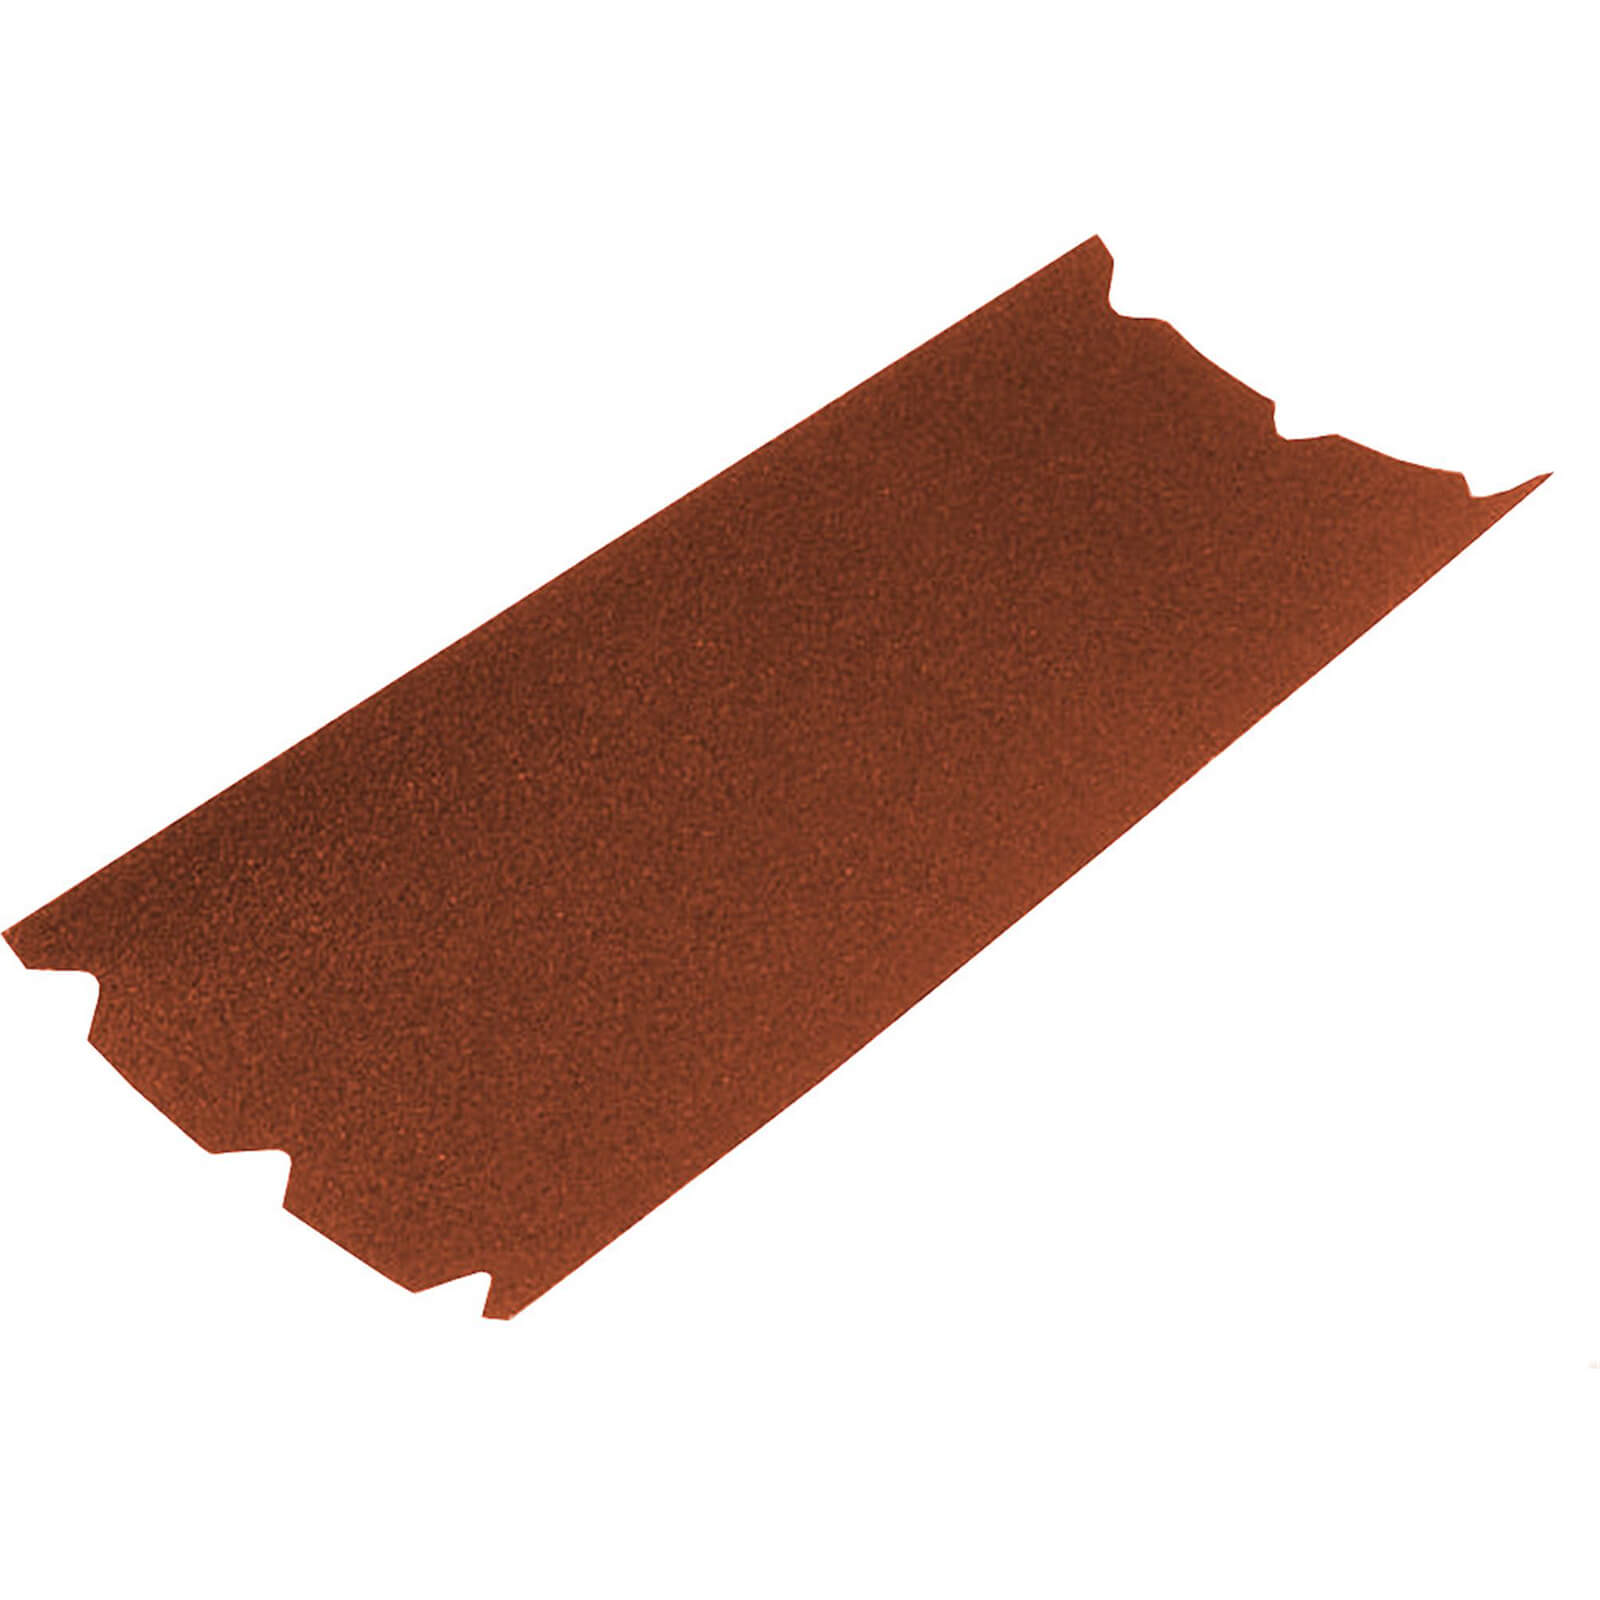 Image of Faithfull Floor Sanding Sheets 203mm x 475mm 24g Pack of 1